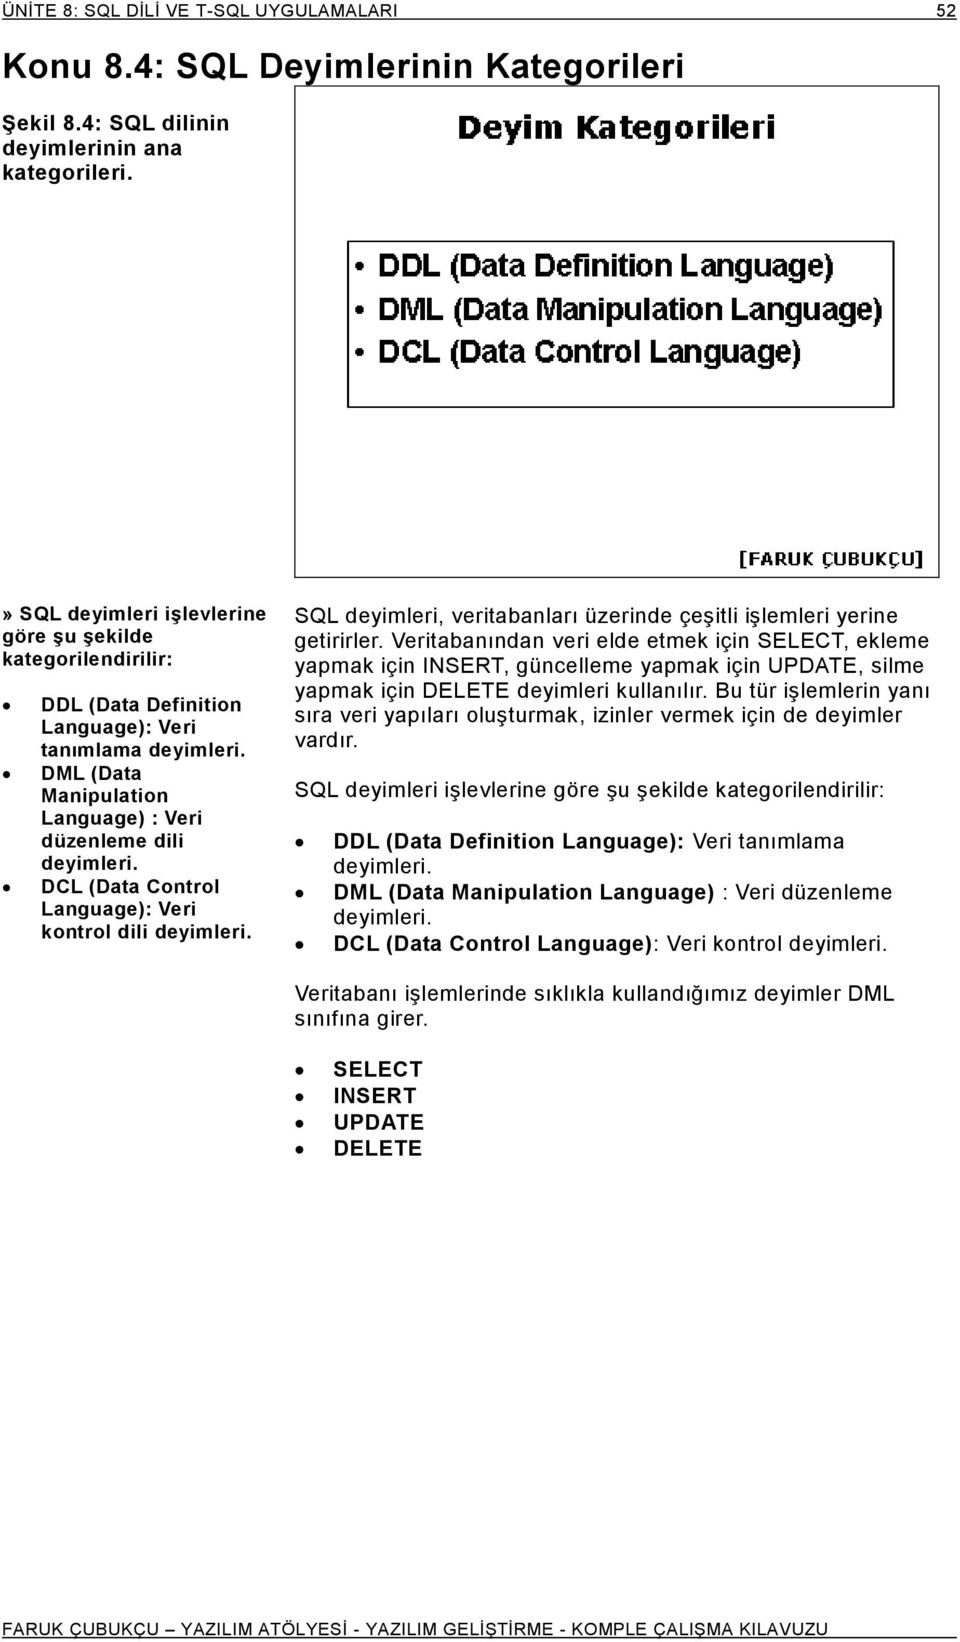 DCL (Data Control Language): Veri kontrol dili deyimleri. SQL deyimleri, veritabanları üzerinde çeşitli işlemleri yerine getirirler.